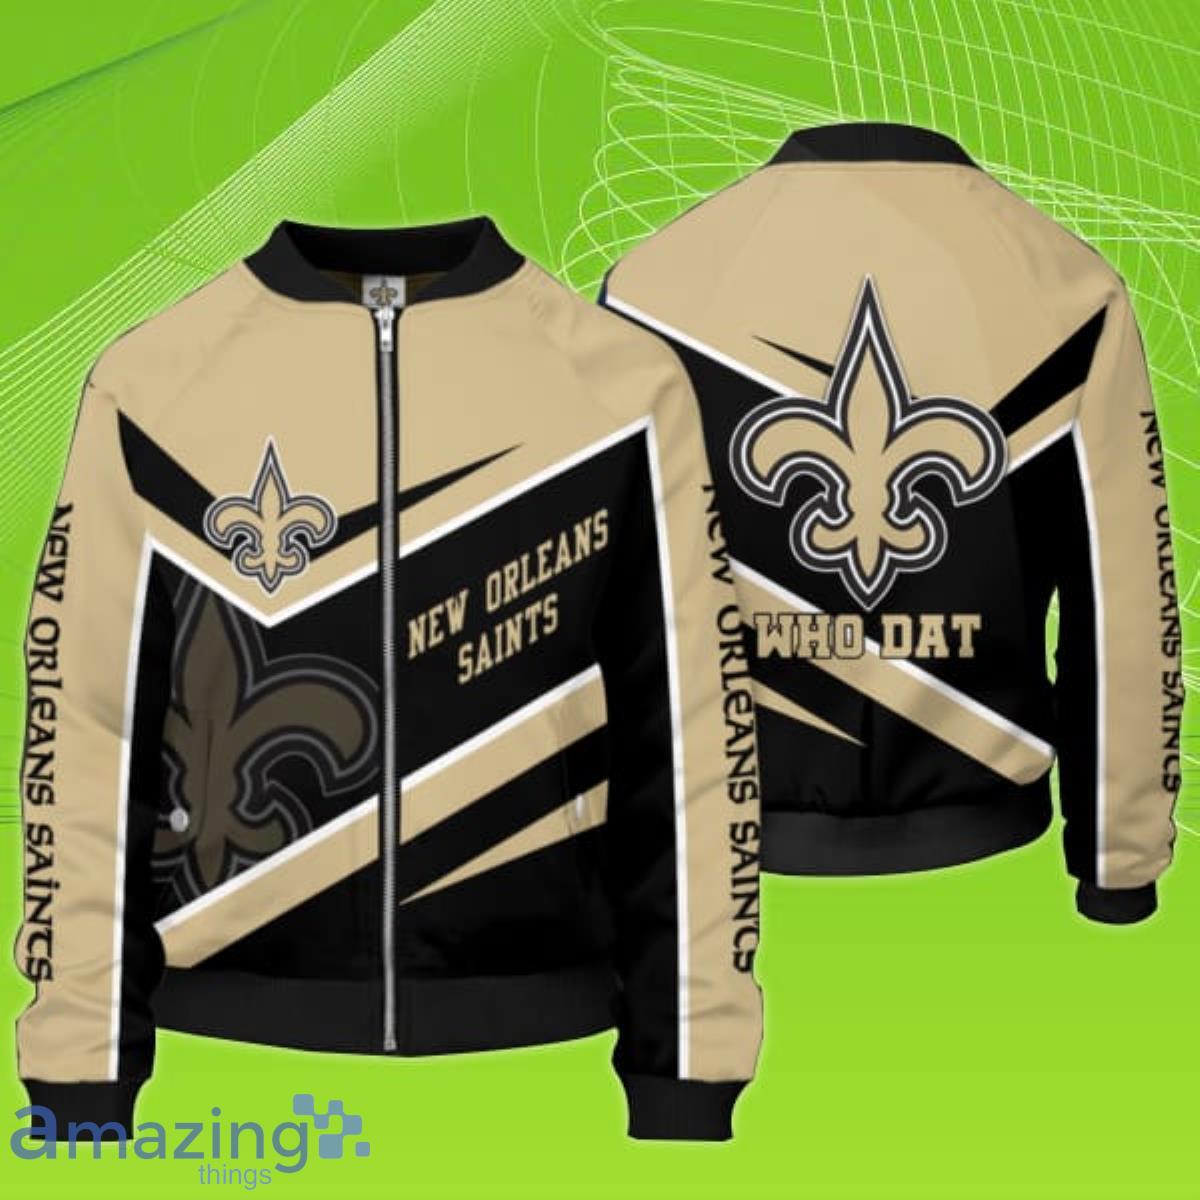 New Orleans Saints NFL Bomber Jacket Unique Gift